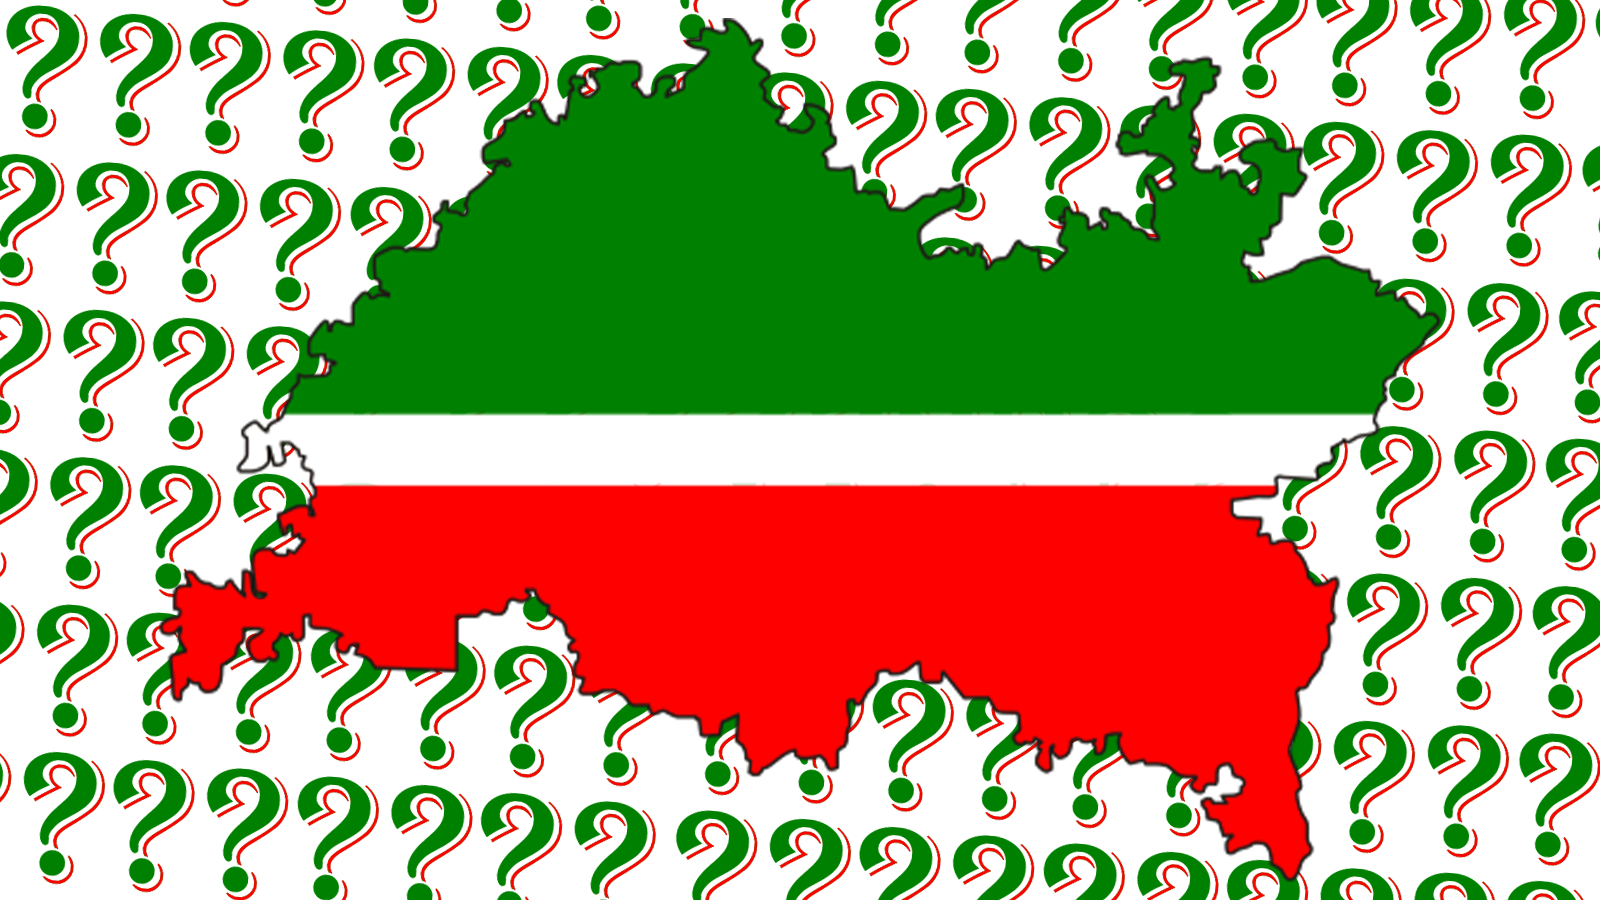 Исторические шансы Татарстана – что делать сейчас с учетом уроков прошлого?